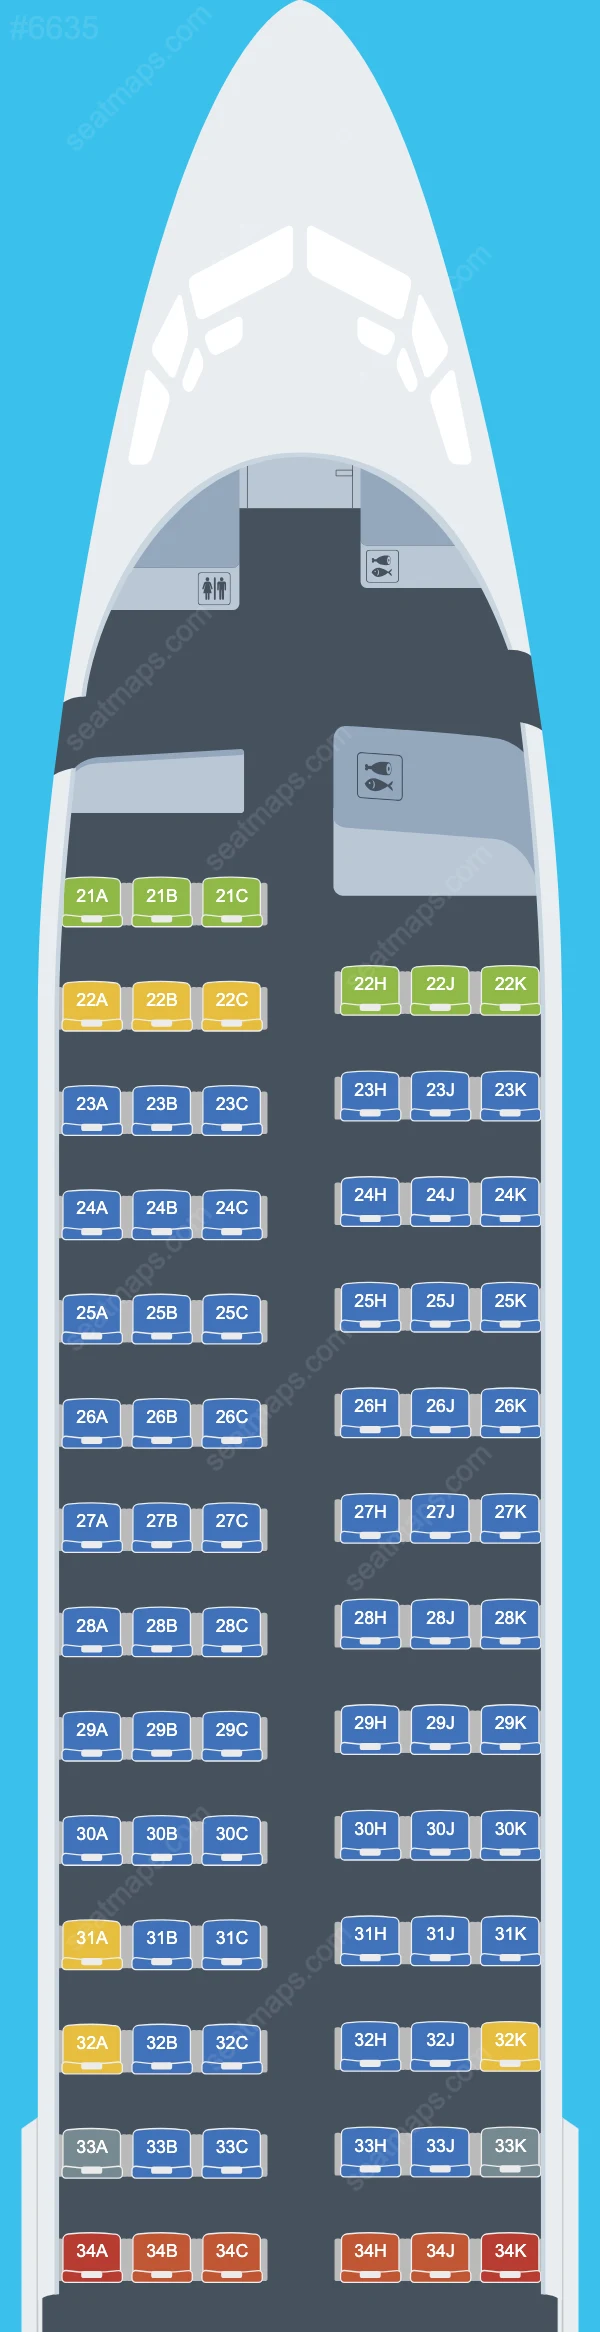 Mappe dei posti dell'Boeing 737-800 della El Al 737-800 V.2